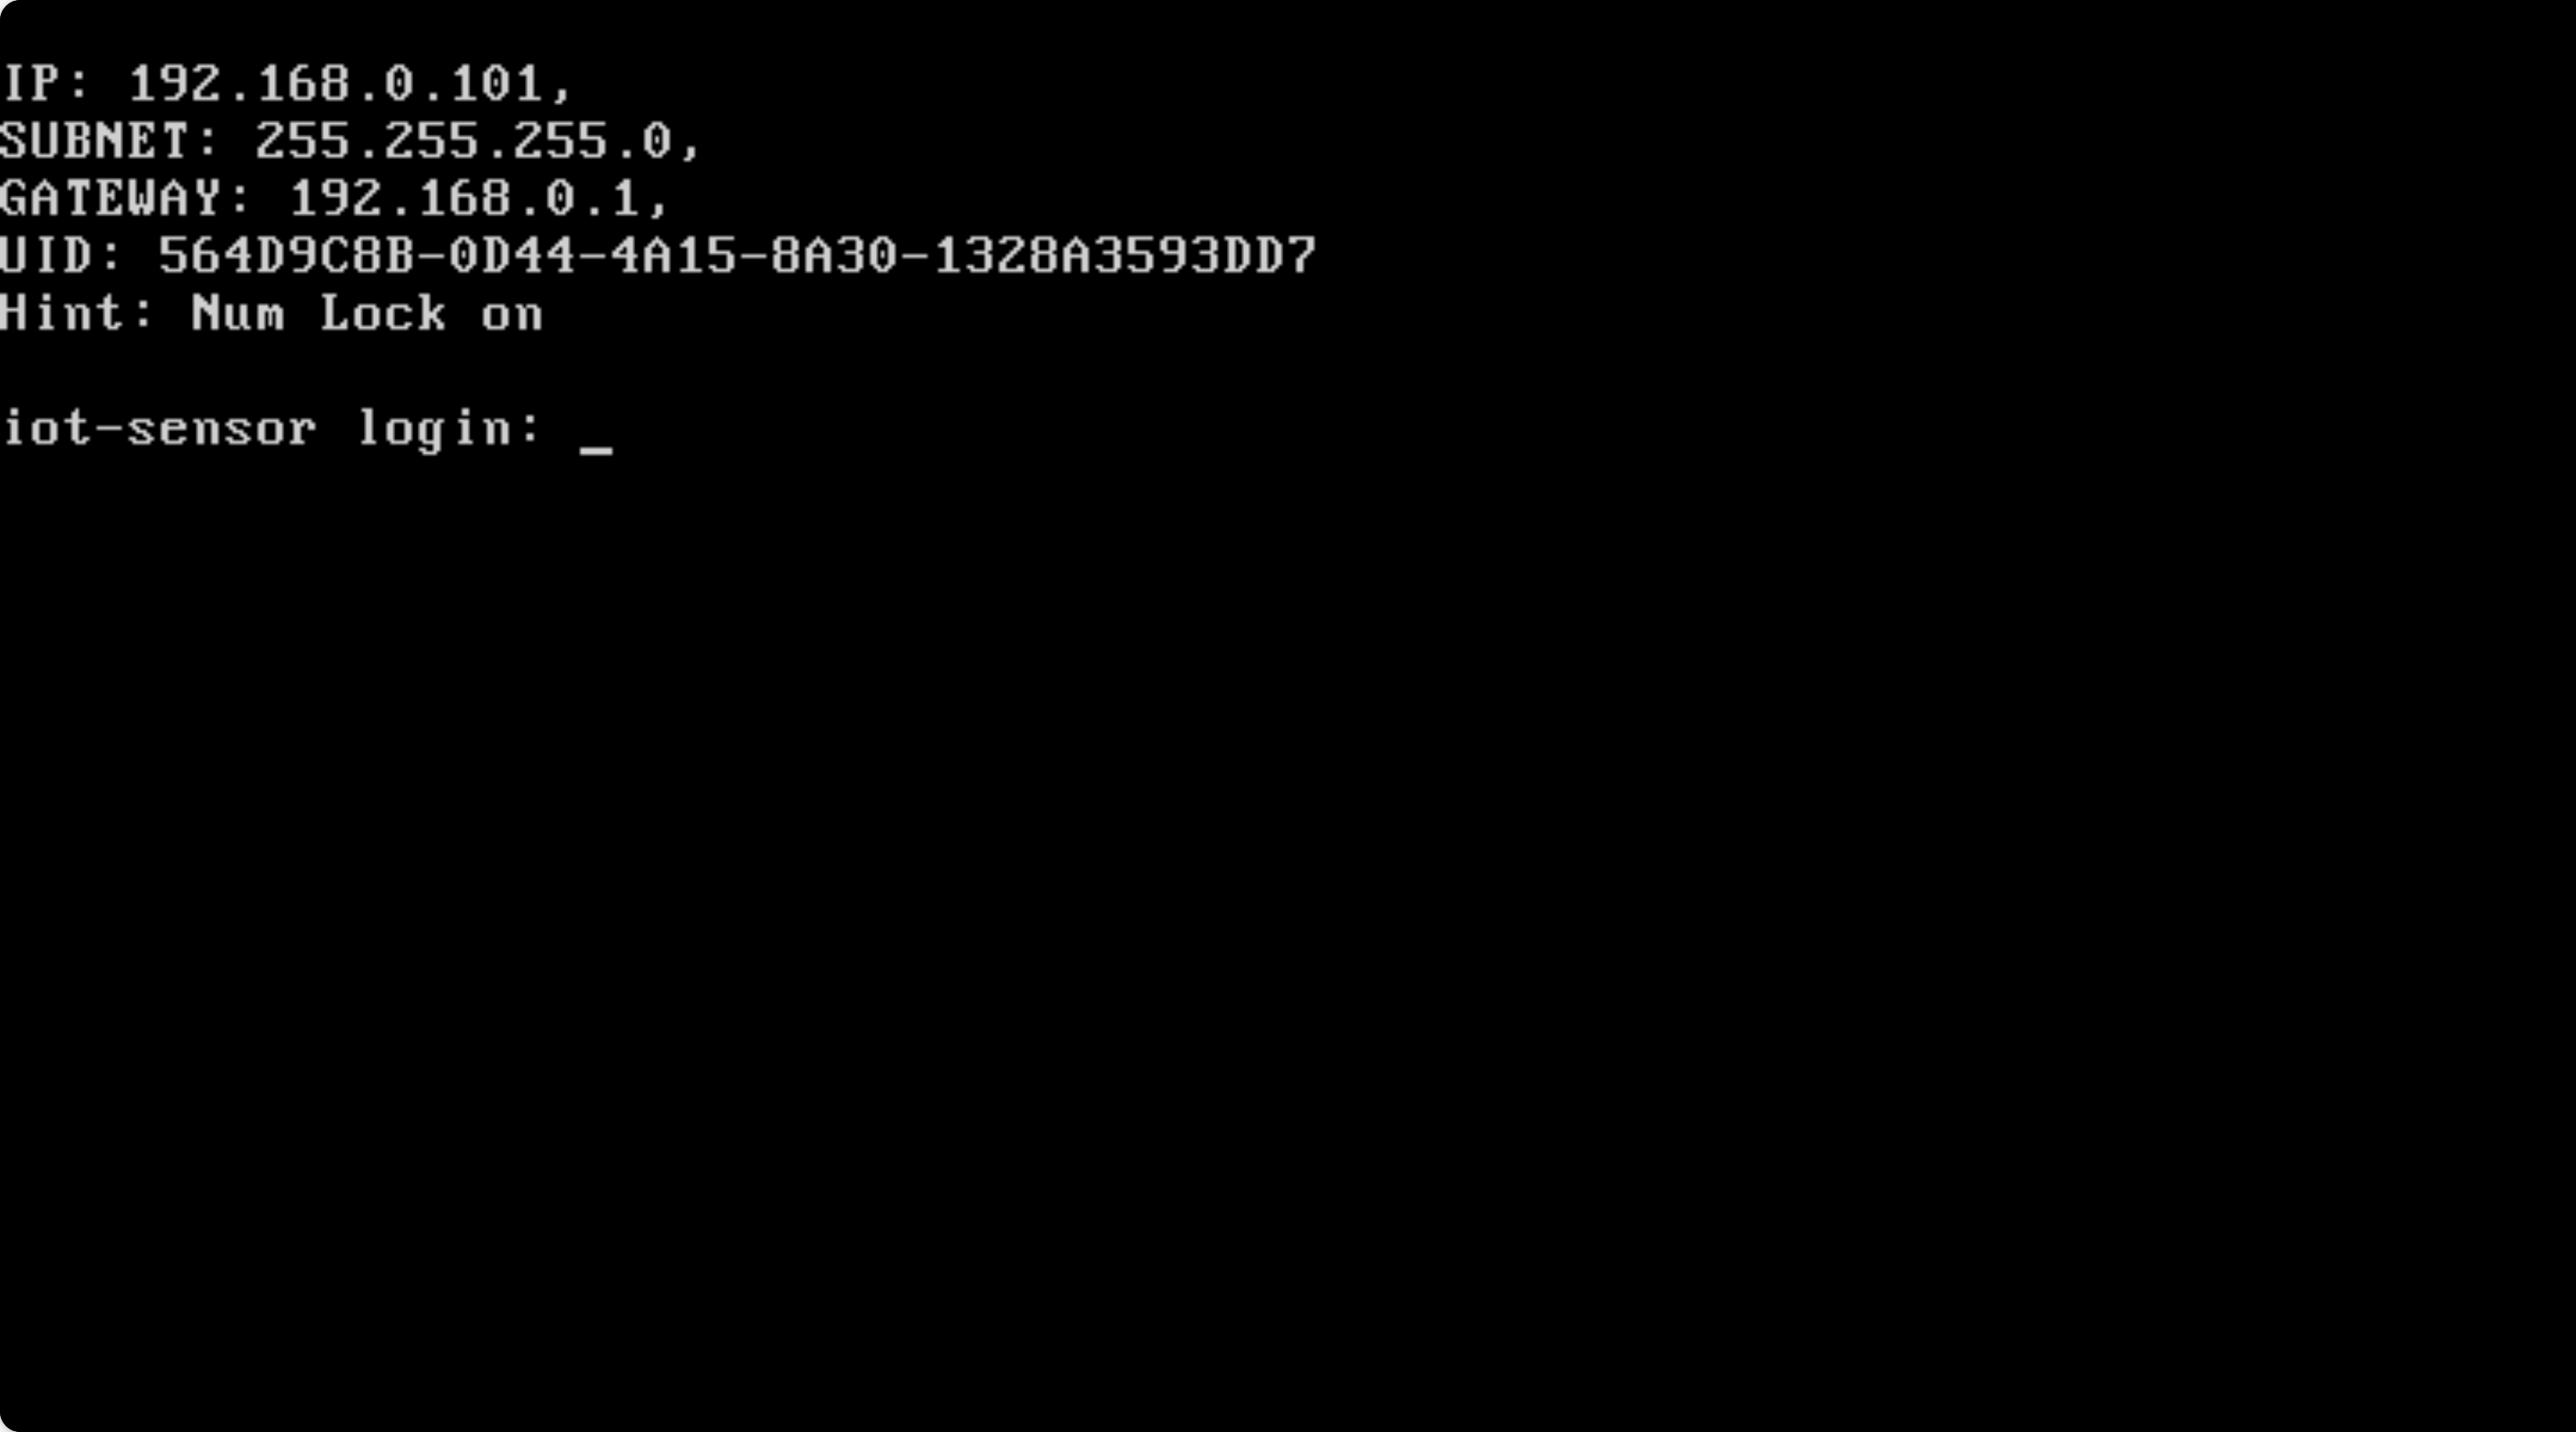 Képernyőkép a kezdeti CLI-konfiguráció végén található végső bejelentkezési kérésről.